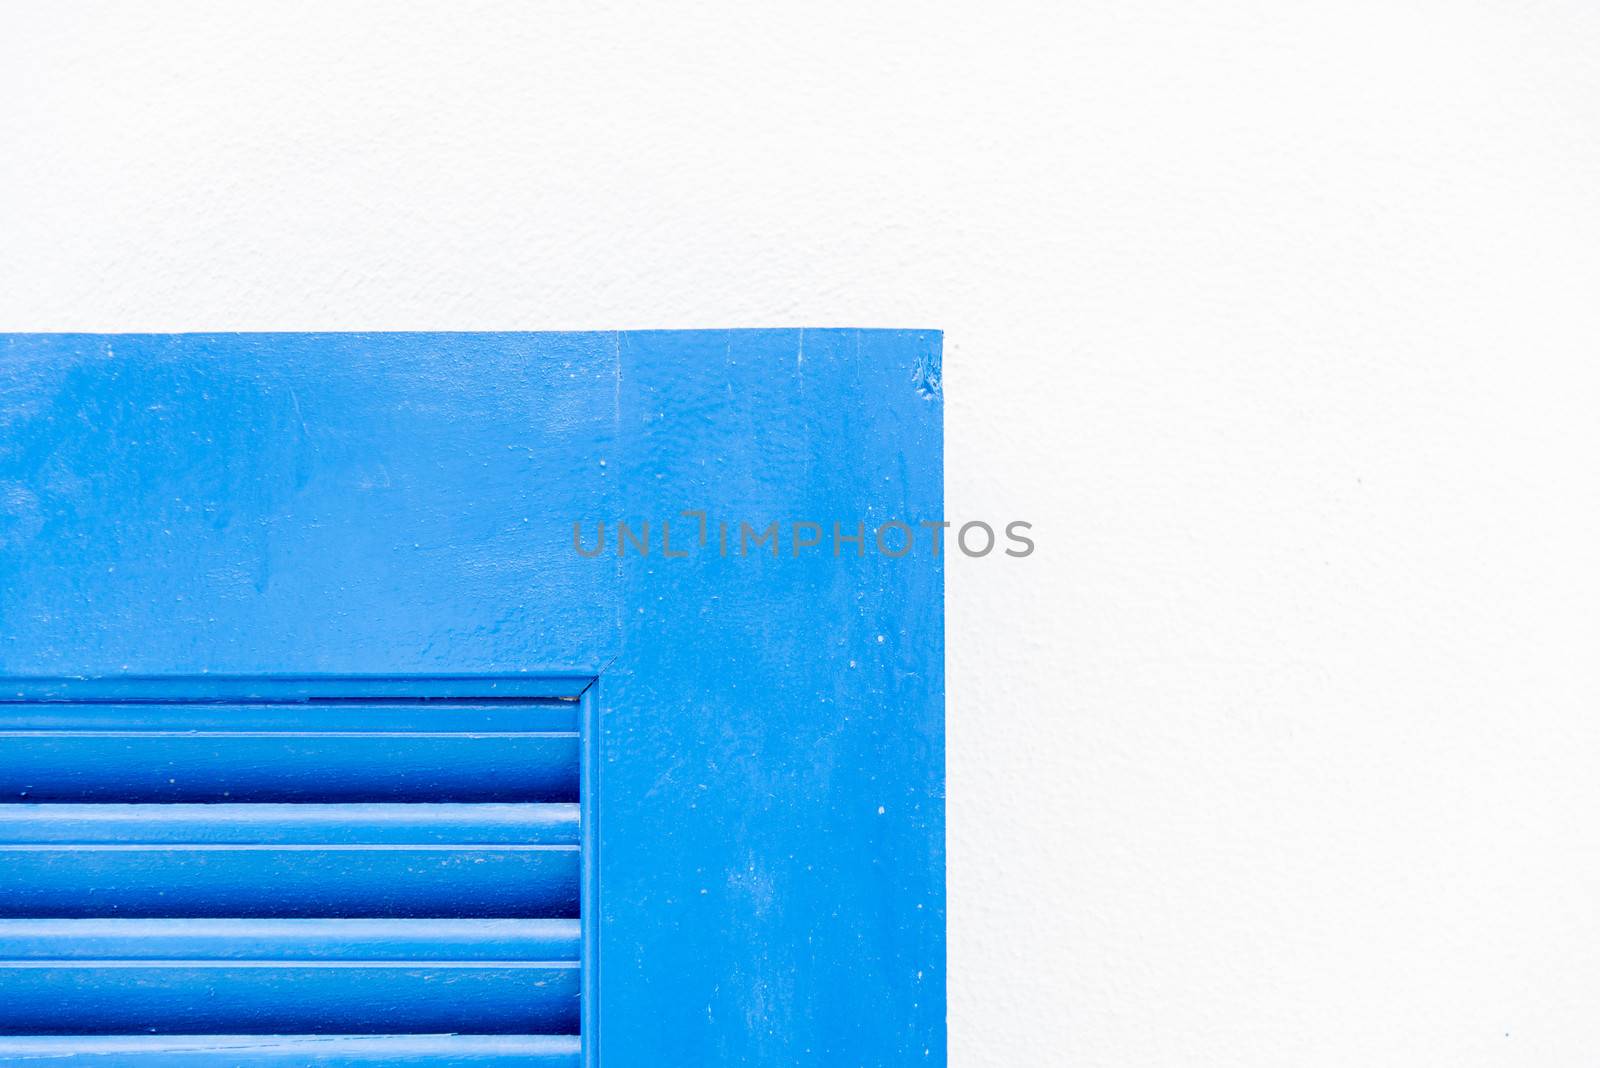 Edge of blue wooden window with white wall2 by gjeerawut